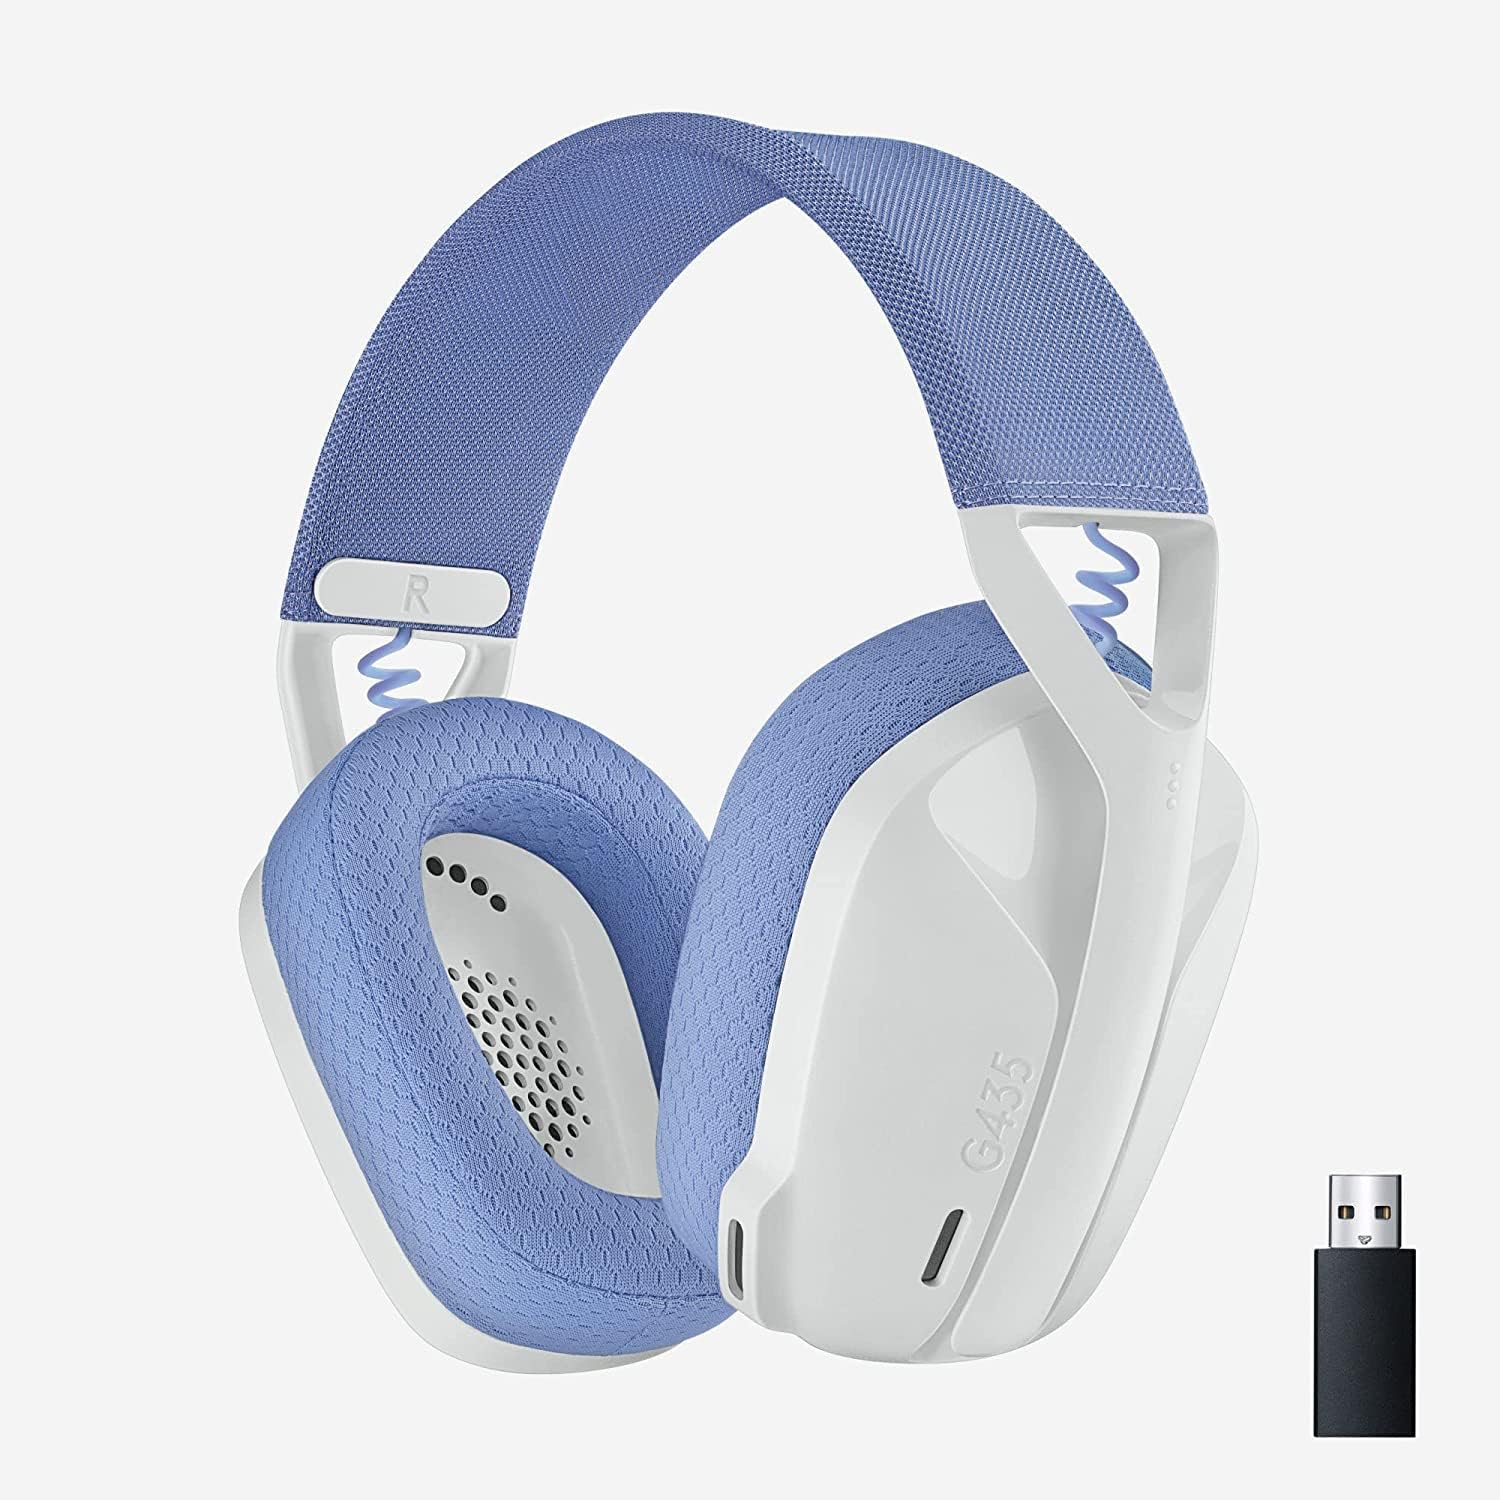 Highlight: Hlavní název produktu: Logitech G435 Lightspeed and Bluetooth Wireless Gaming Headset